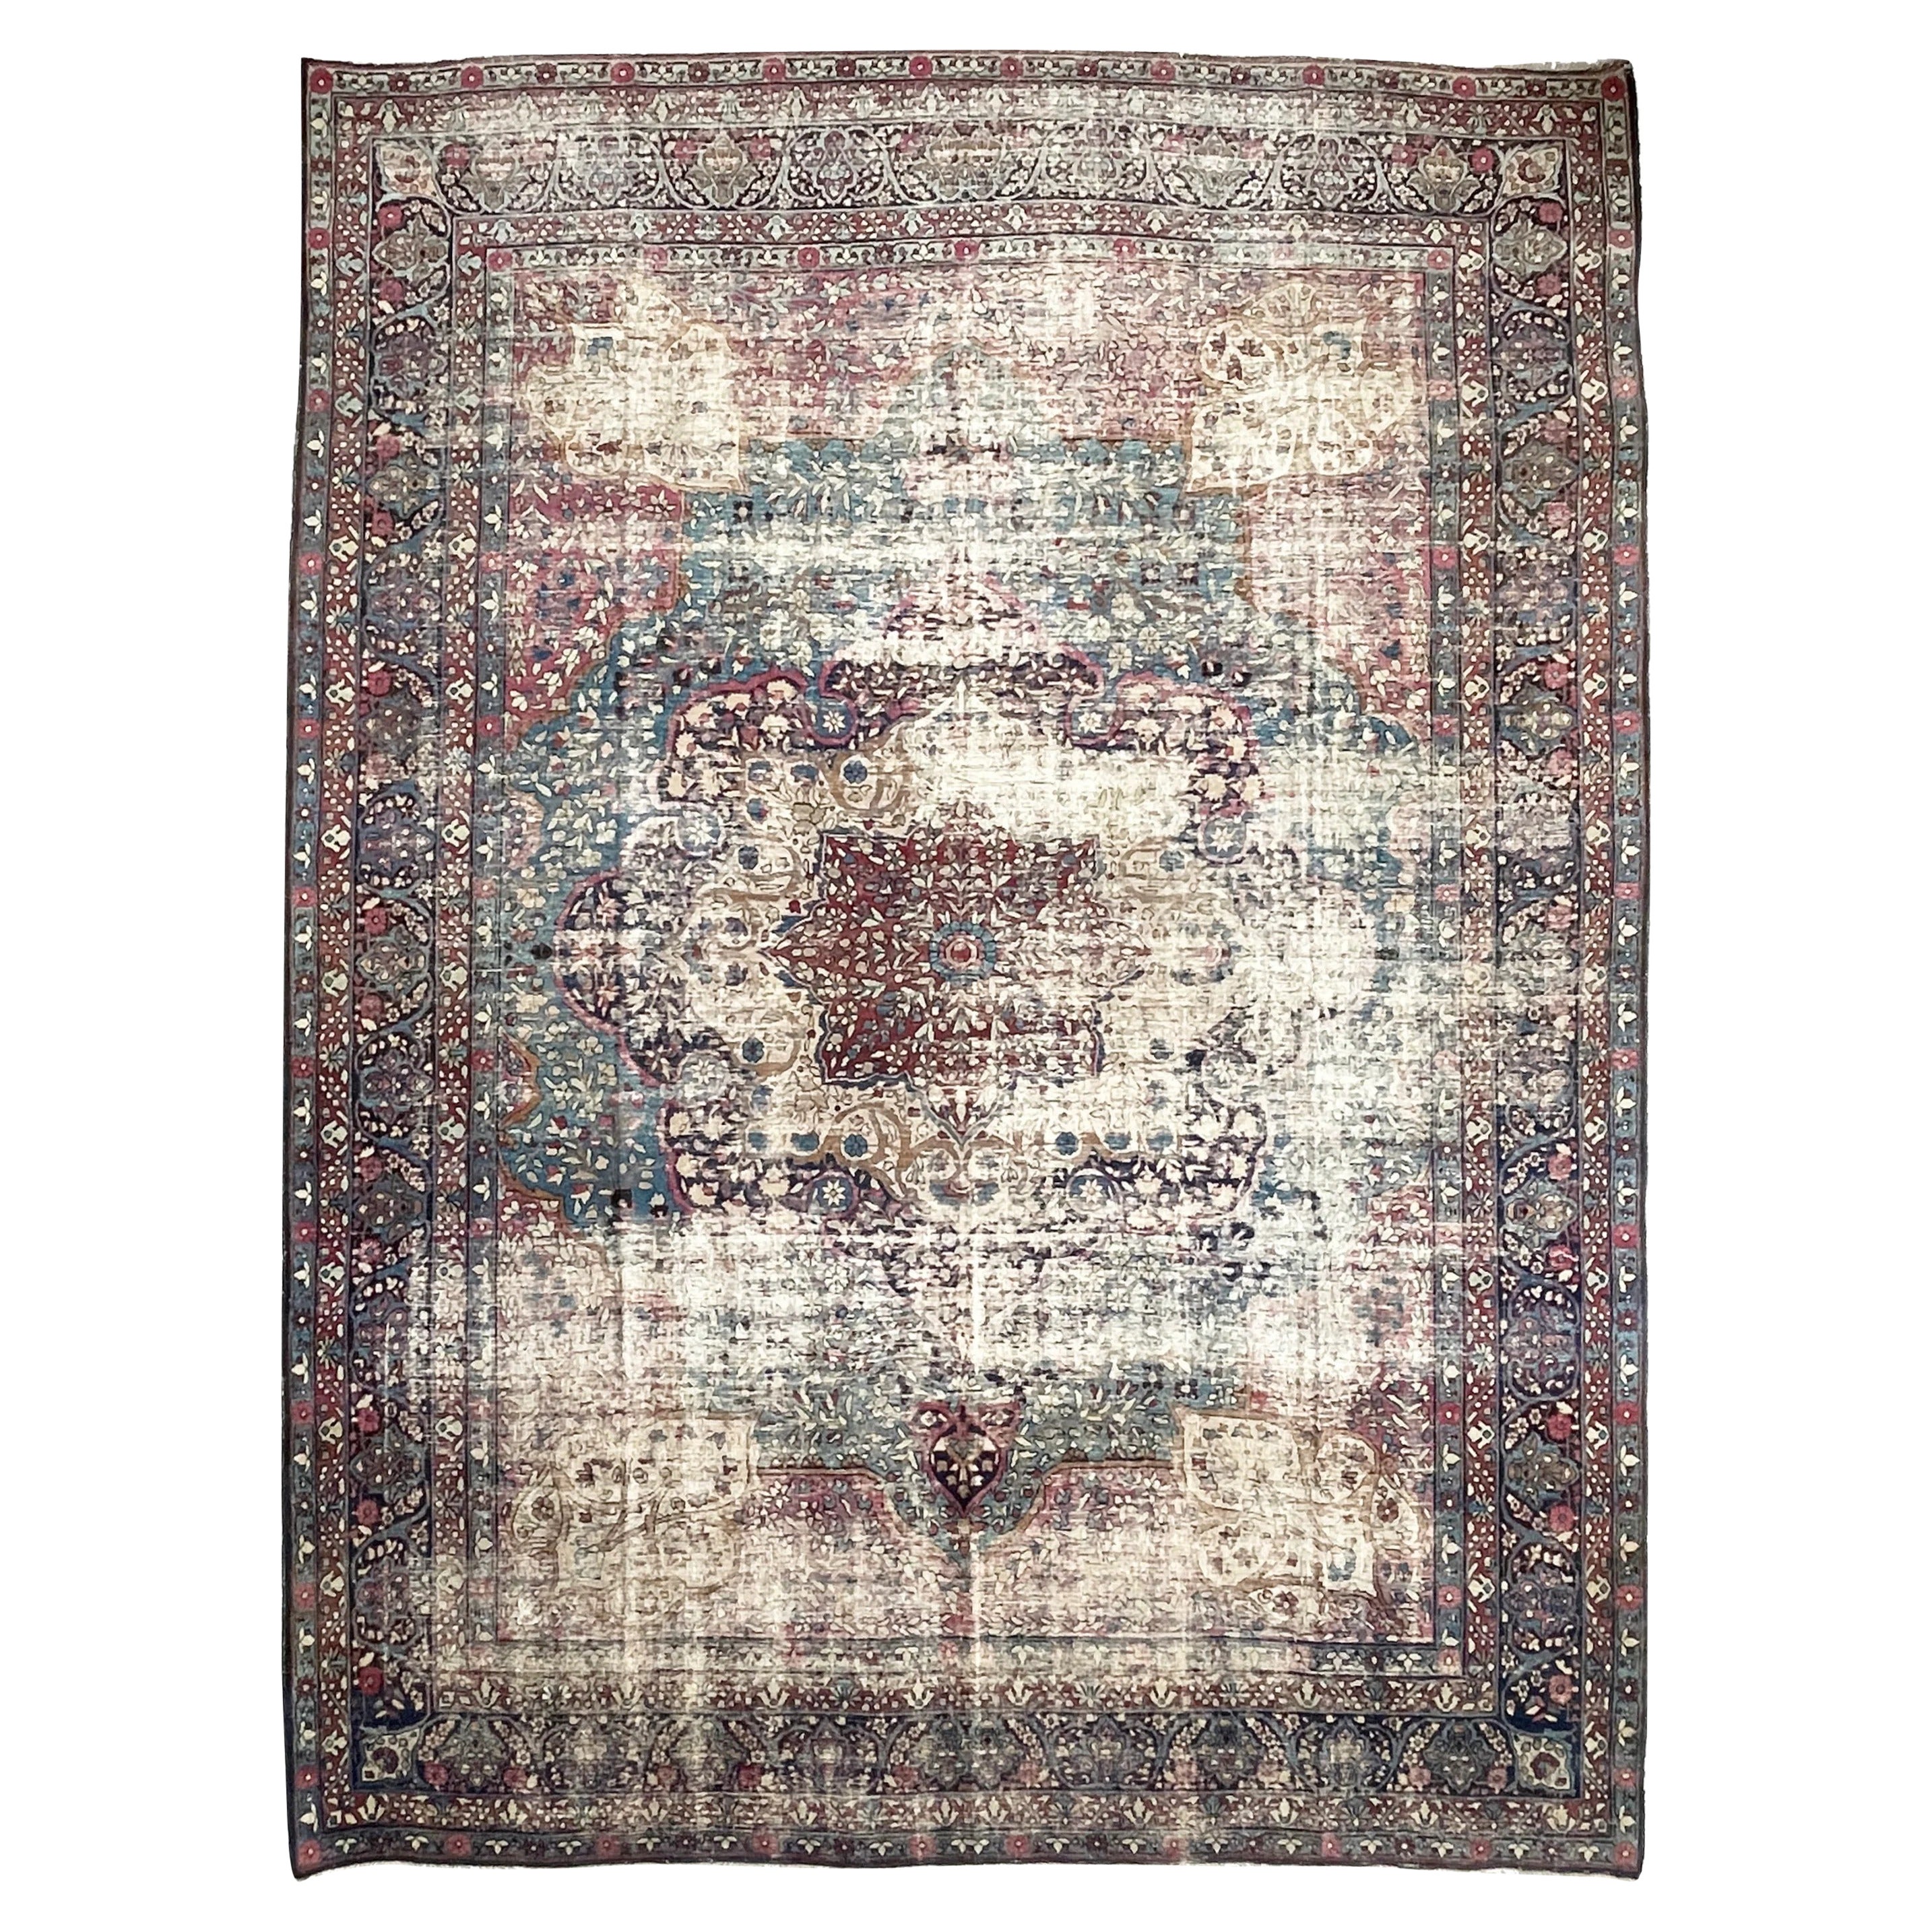 Superbe tapis persan ancien Kermanshah-Lavar de couleur unique, datant d'environ 1920